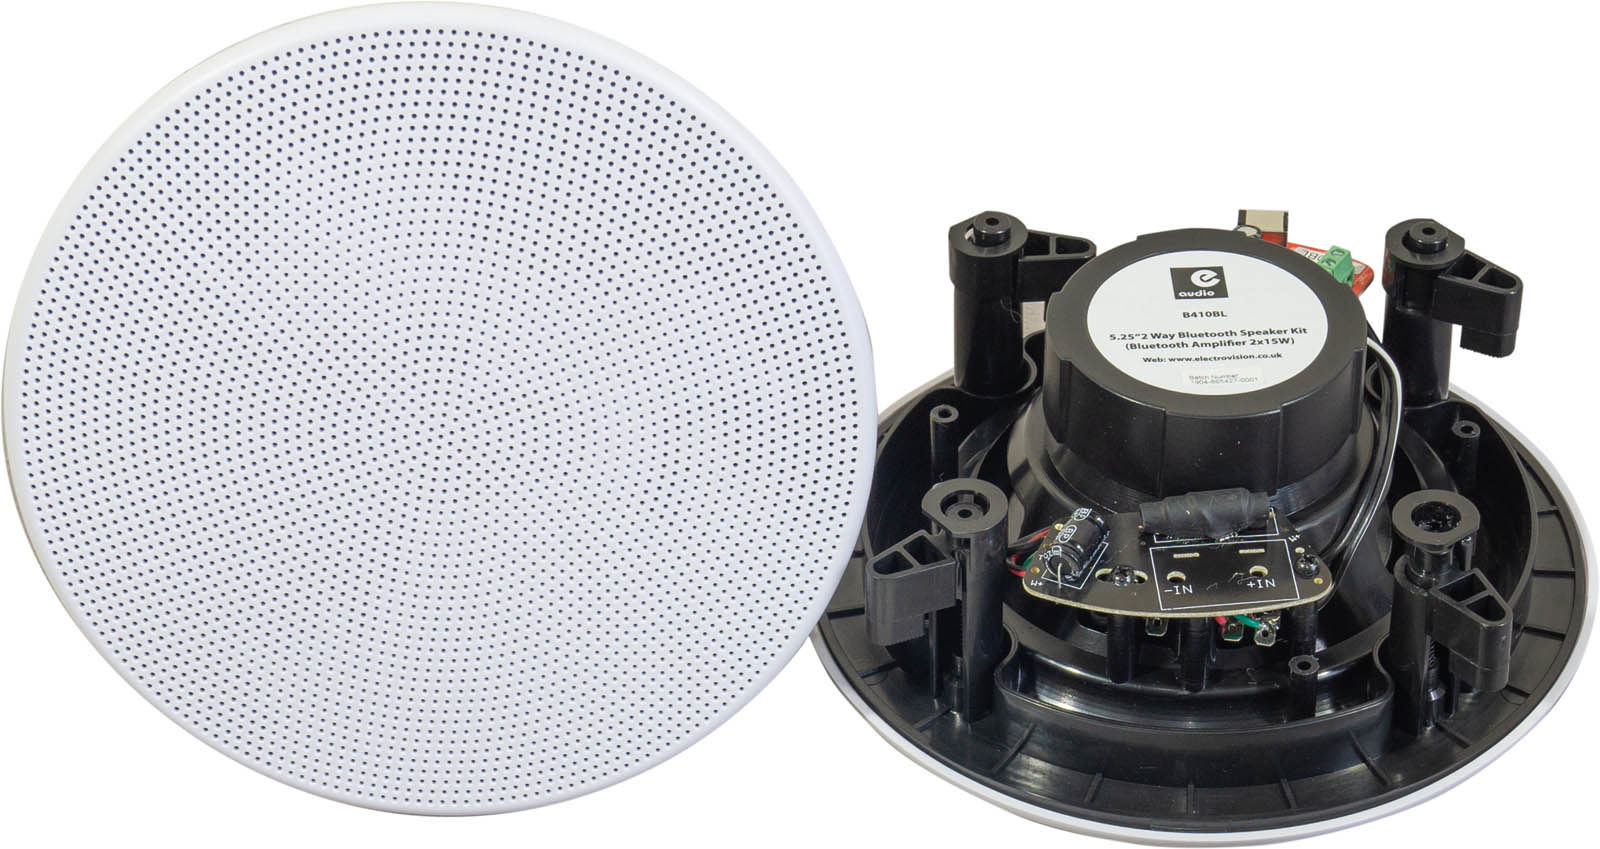 Klokje hartstochtelijk Worstelen E-Audio Bluetooth Badkamer Speaker Systeem - 2x 5.25 inch  plafondluidsprekers - Maxtotaal